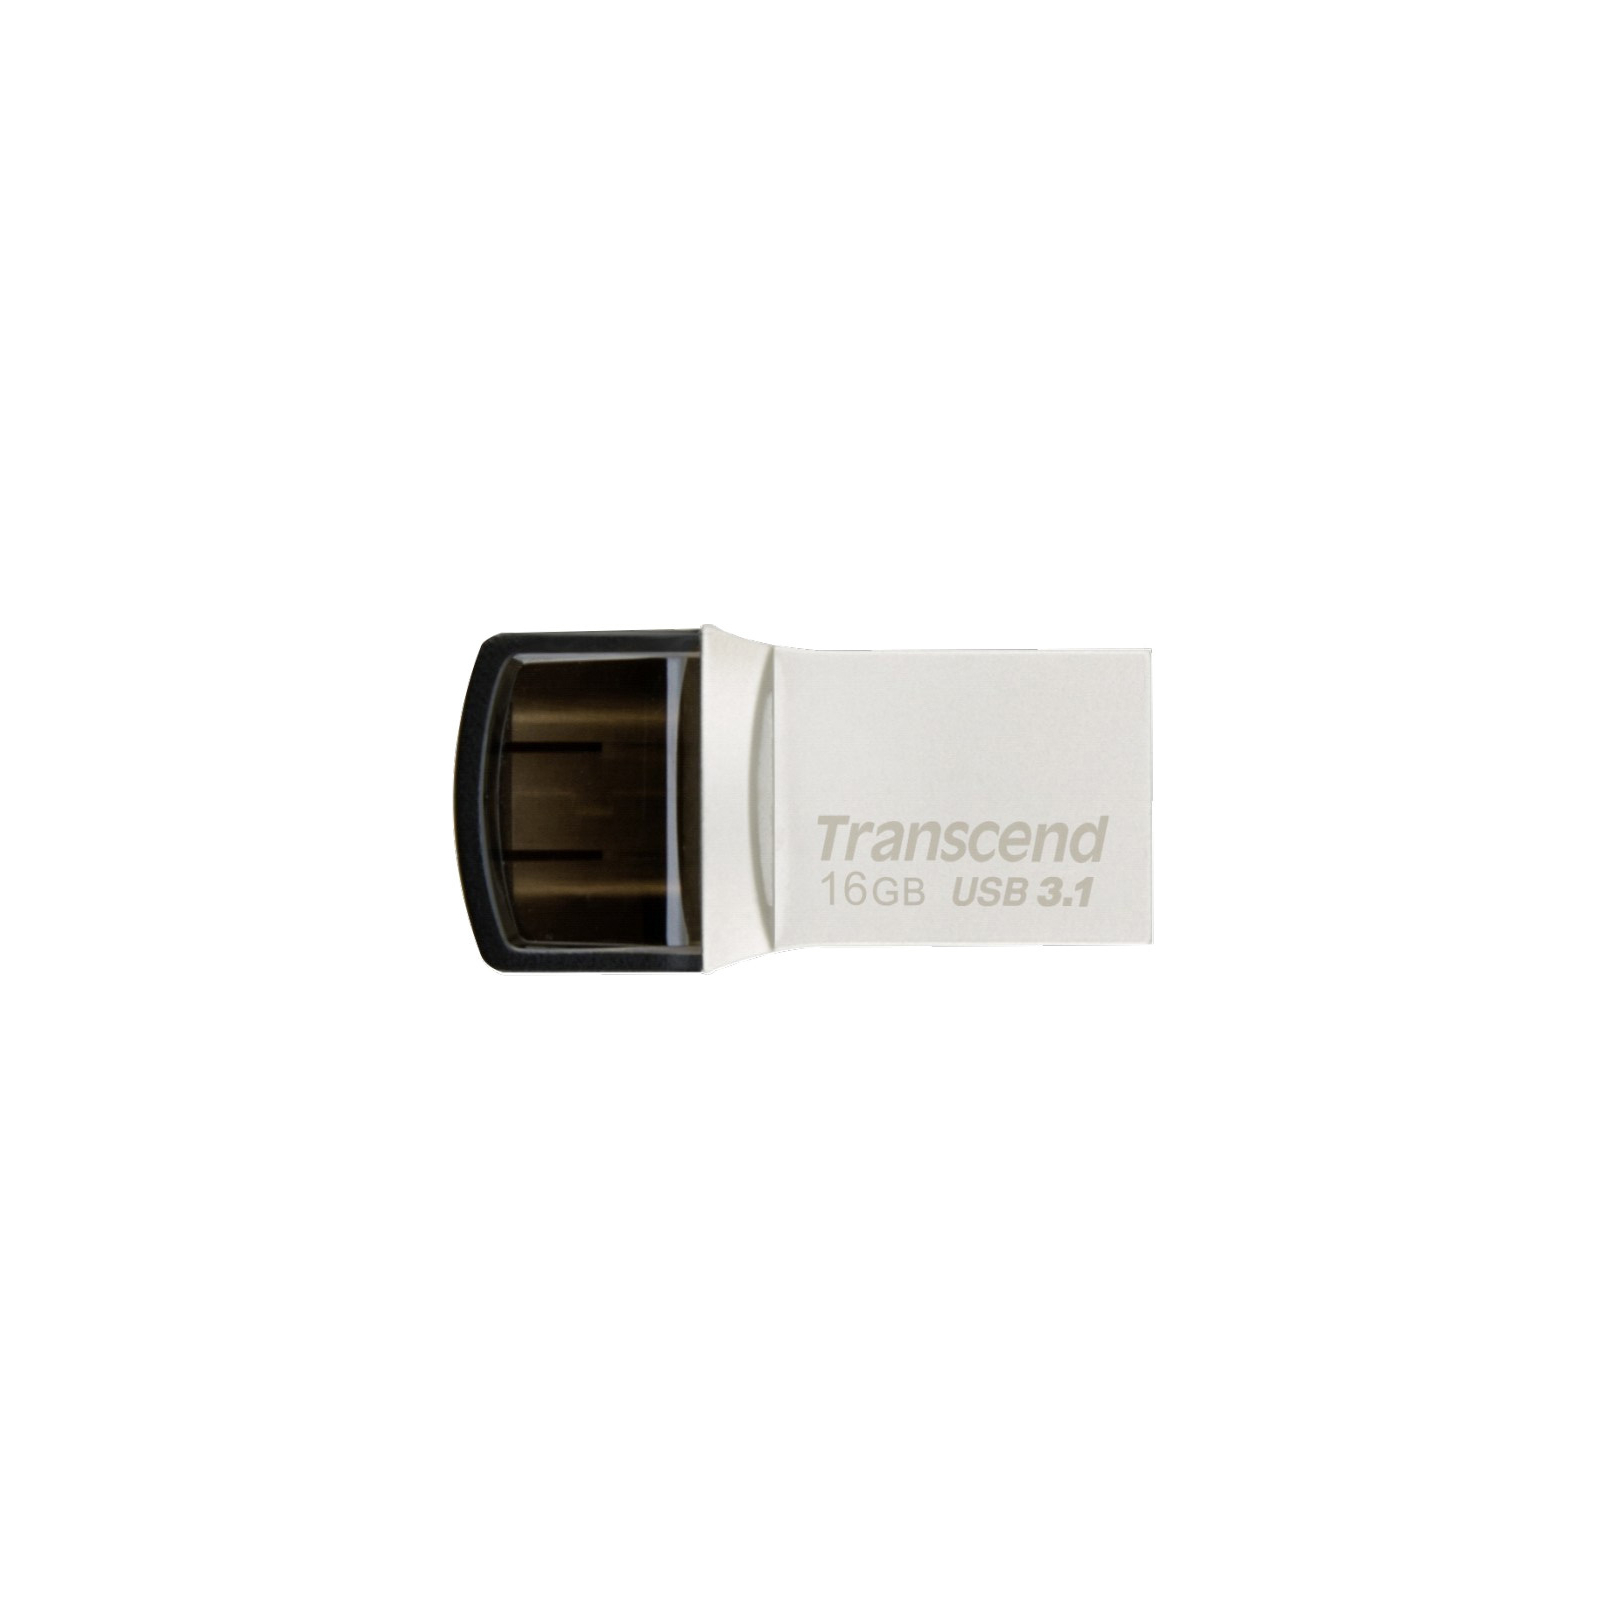 USB флеш накопичувач Transcend 16GB JetFlash 890S Silver USB 3.1 (TS16GJF890S)